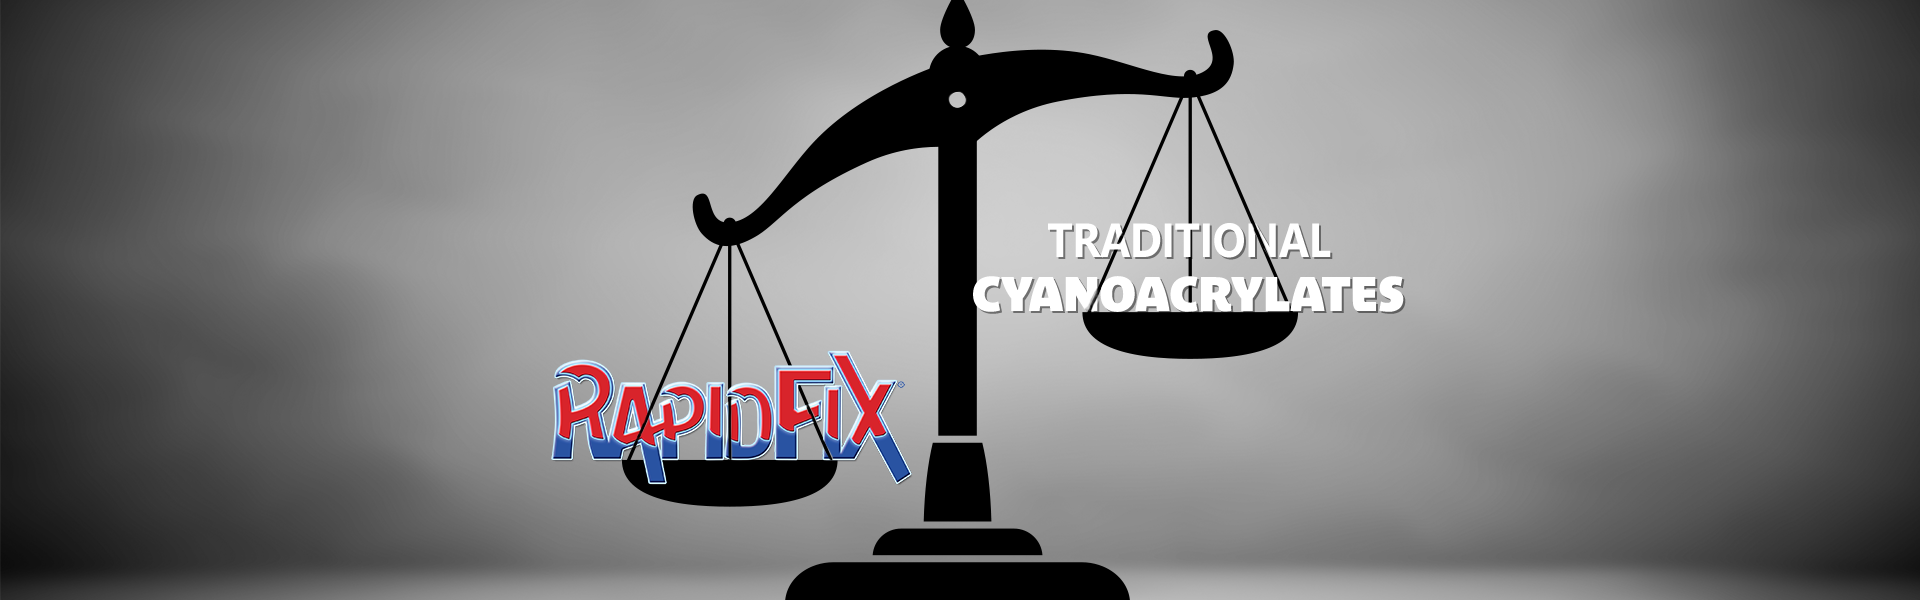 Traditional Cyanoacrylates vs RapidFix